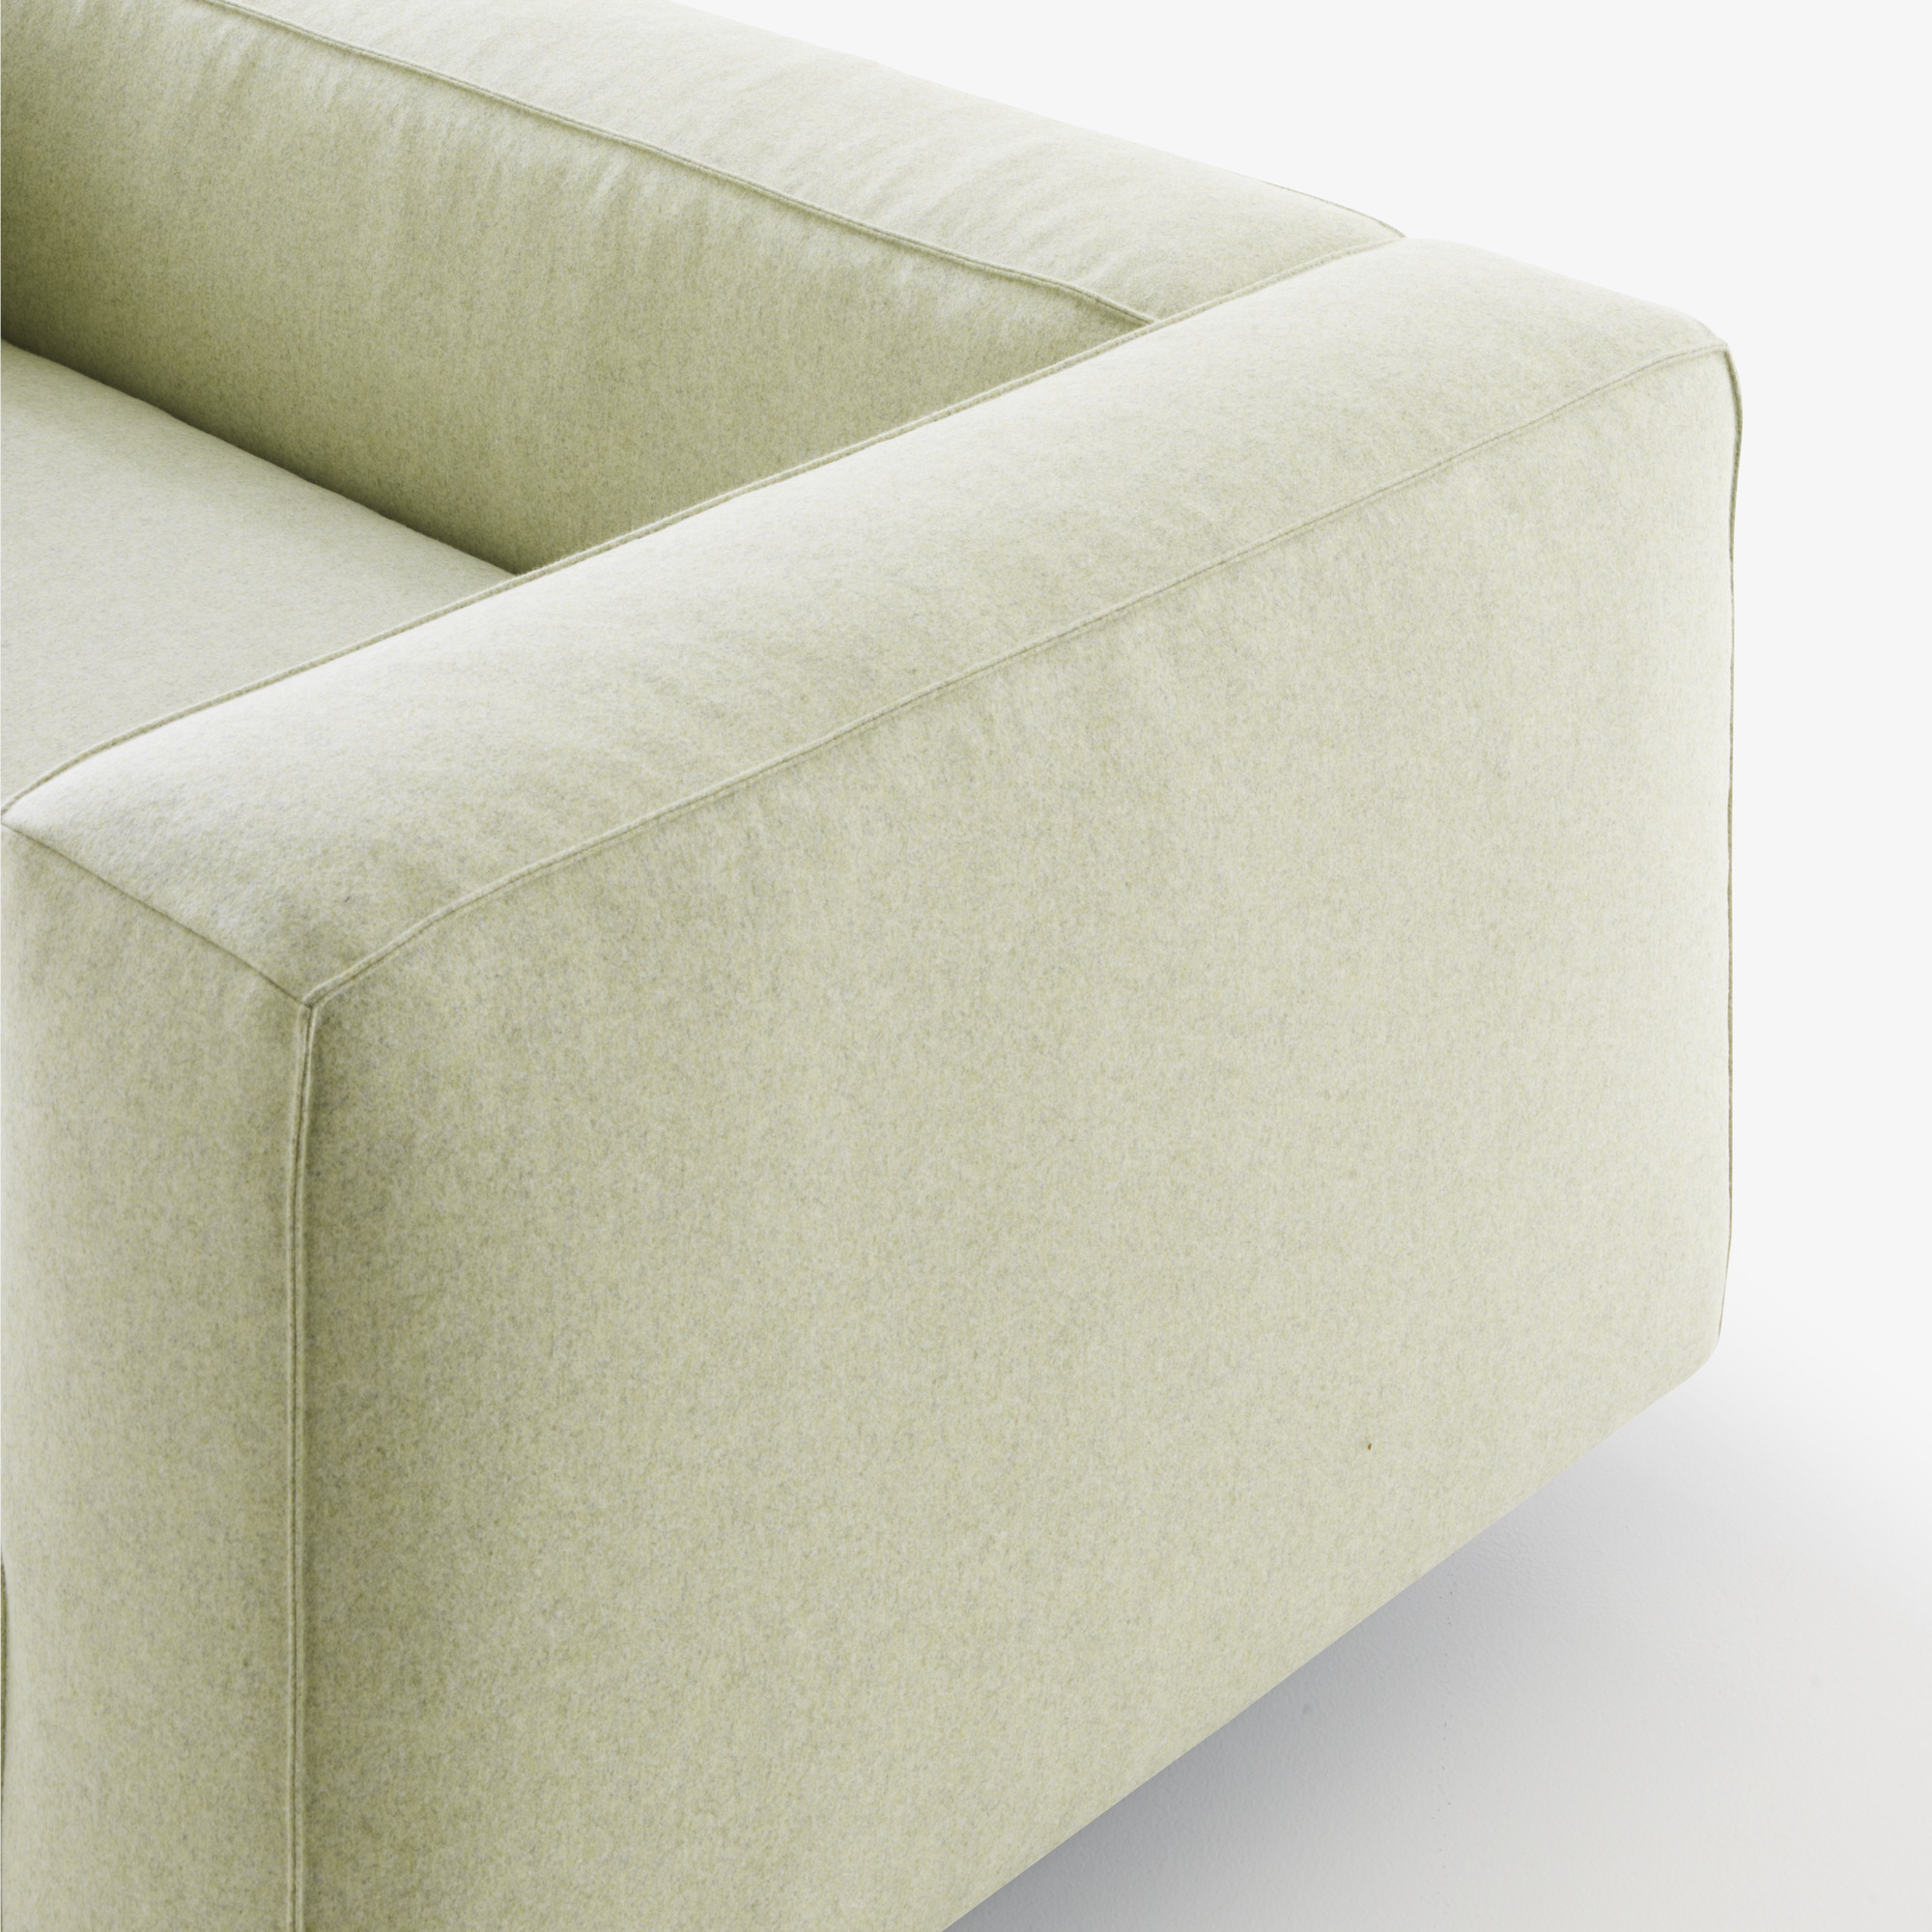 Image Medium sofa complete element  3